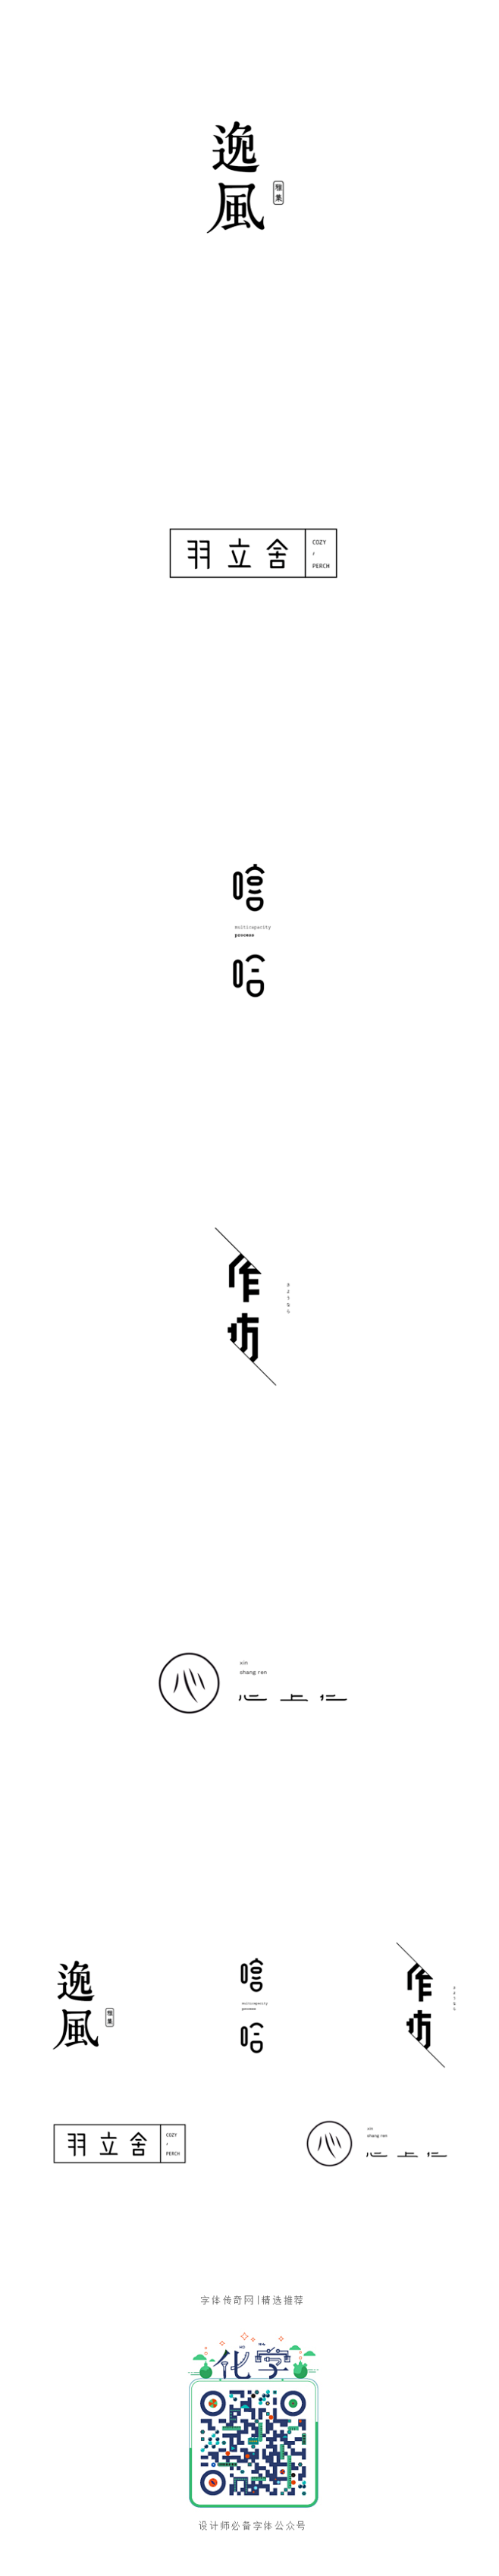 弘弢字研 | 字体设计第三四卷-字体传奇...